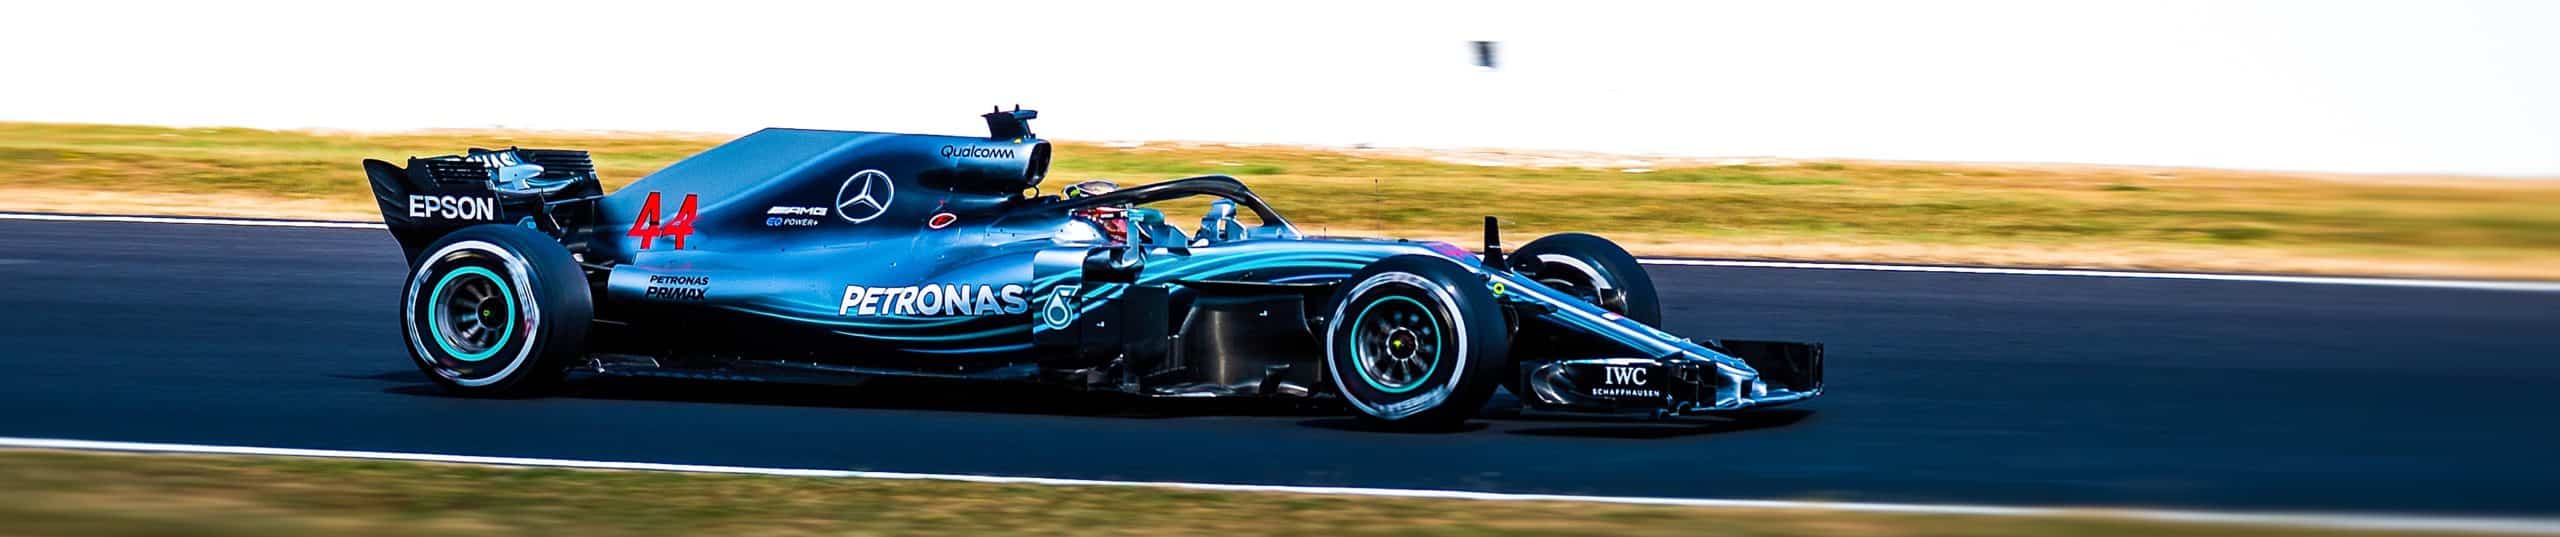 Reifentypen der Formel 1 - Racing Slicks